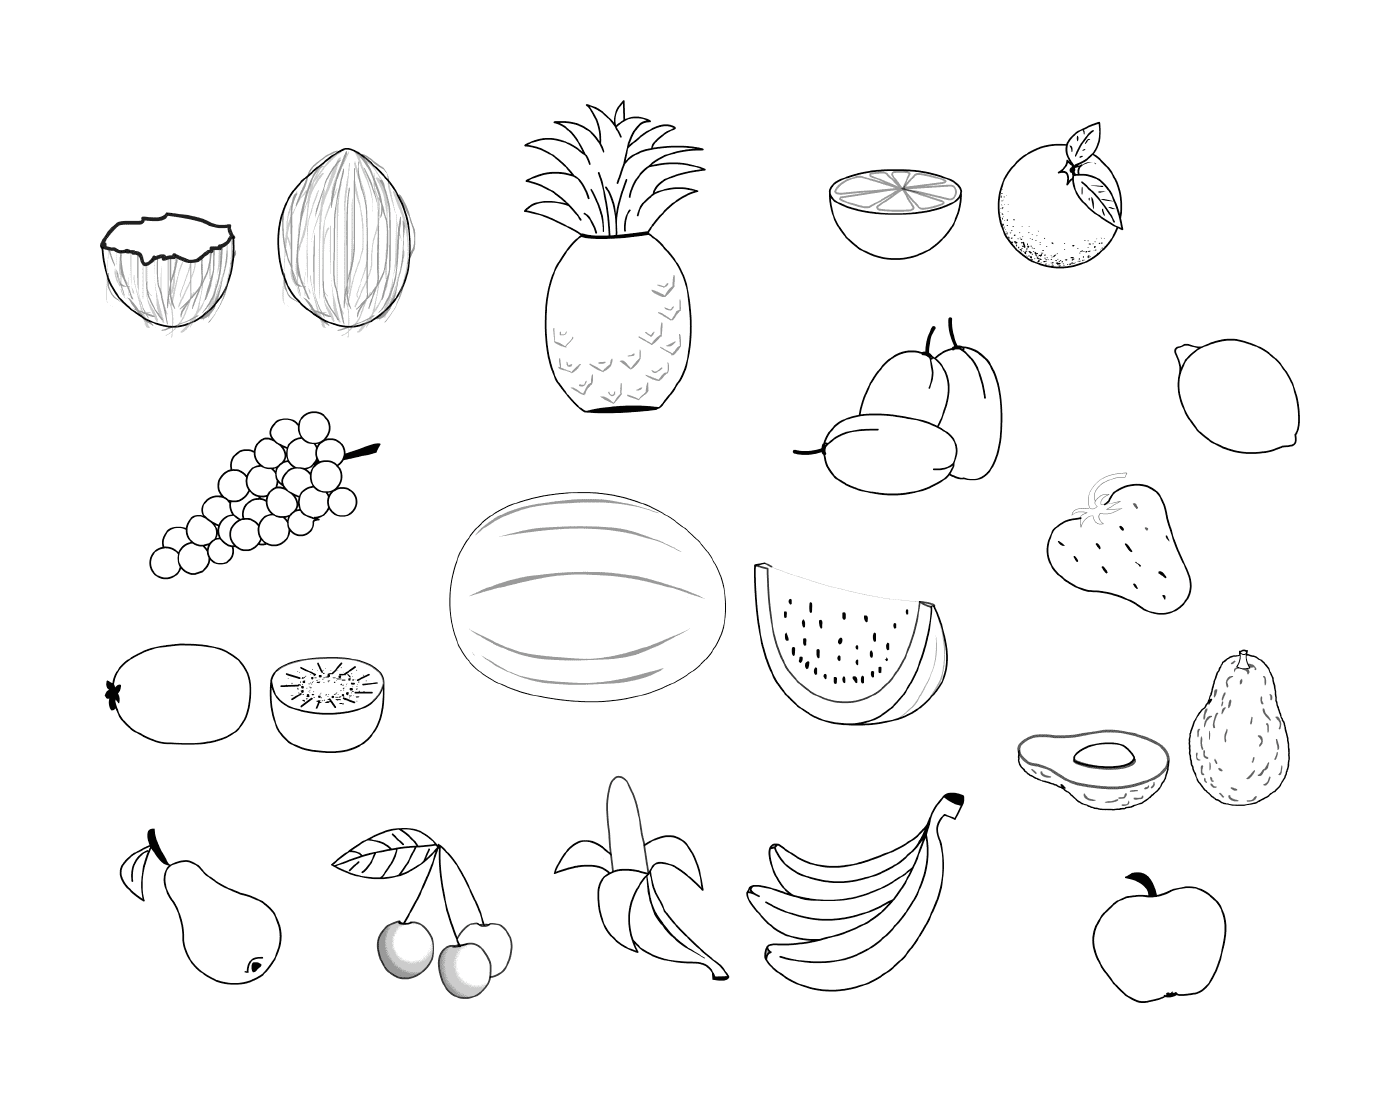  различные фрукты на этой странице 